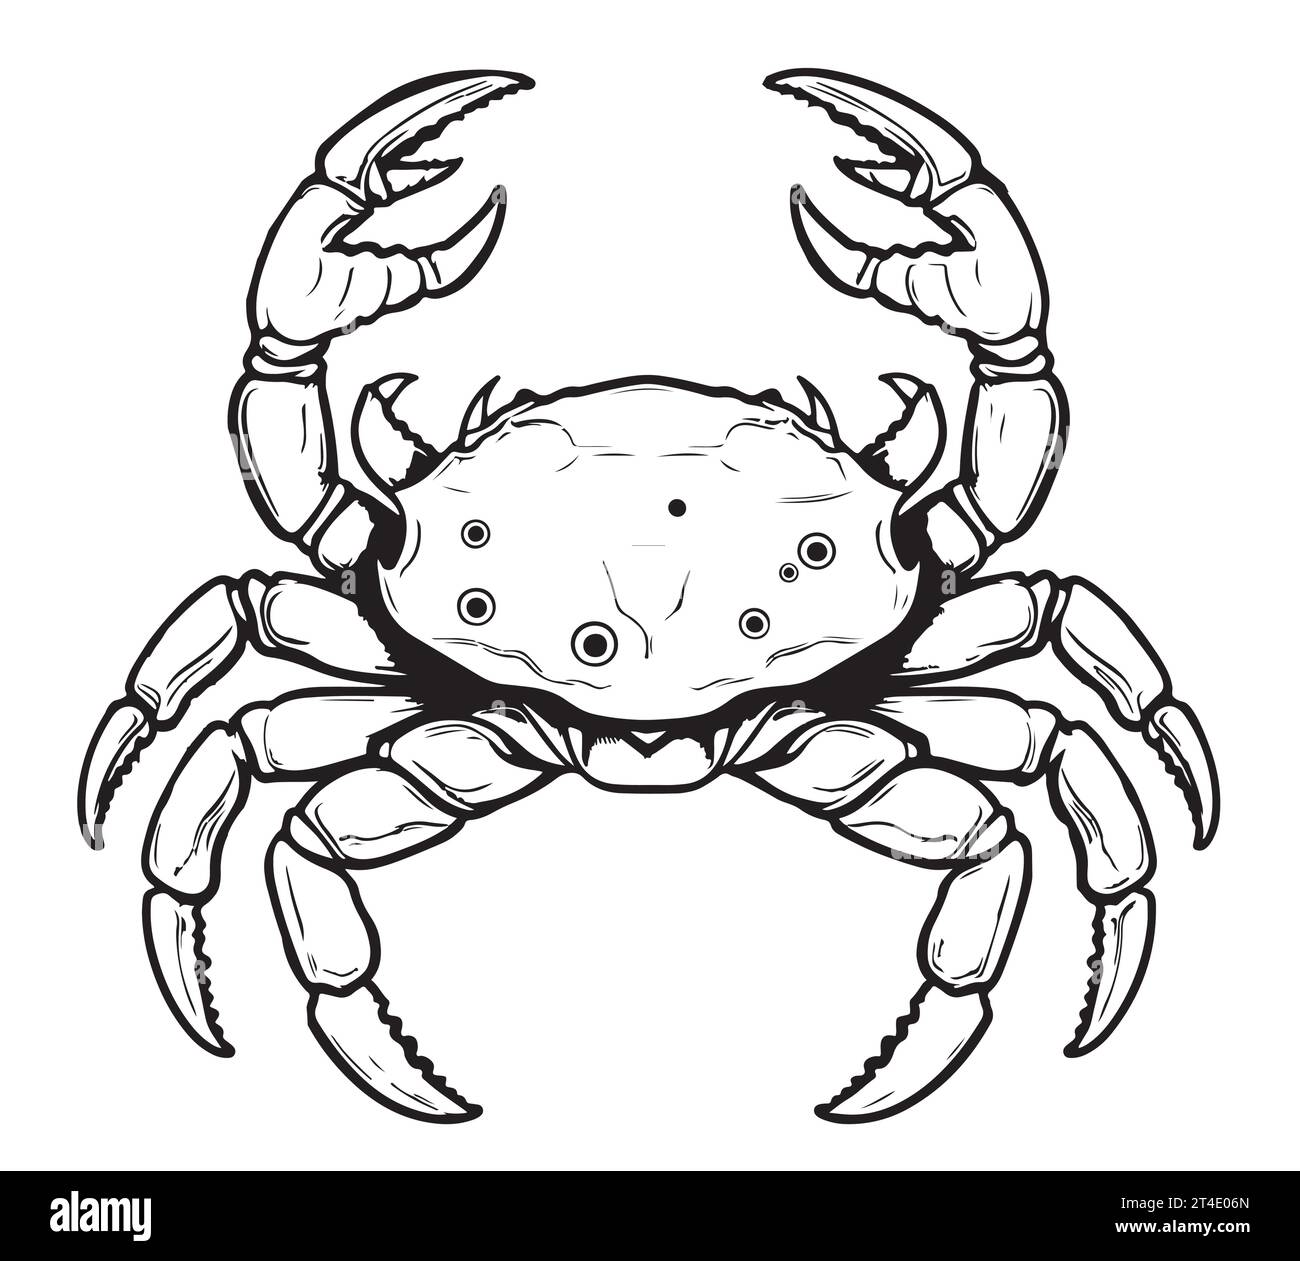 Croquis dessiné à la main de crabe dans le livre de coloriage de style comique Zodiac Illustration de Vecteur